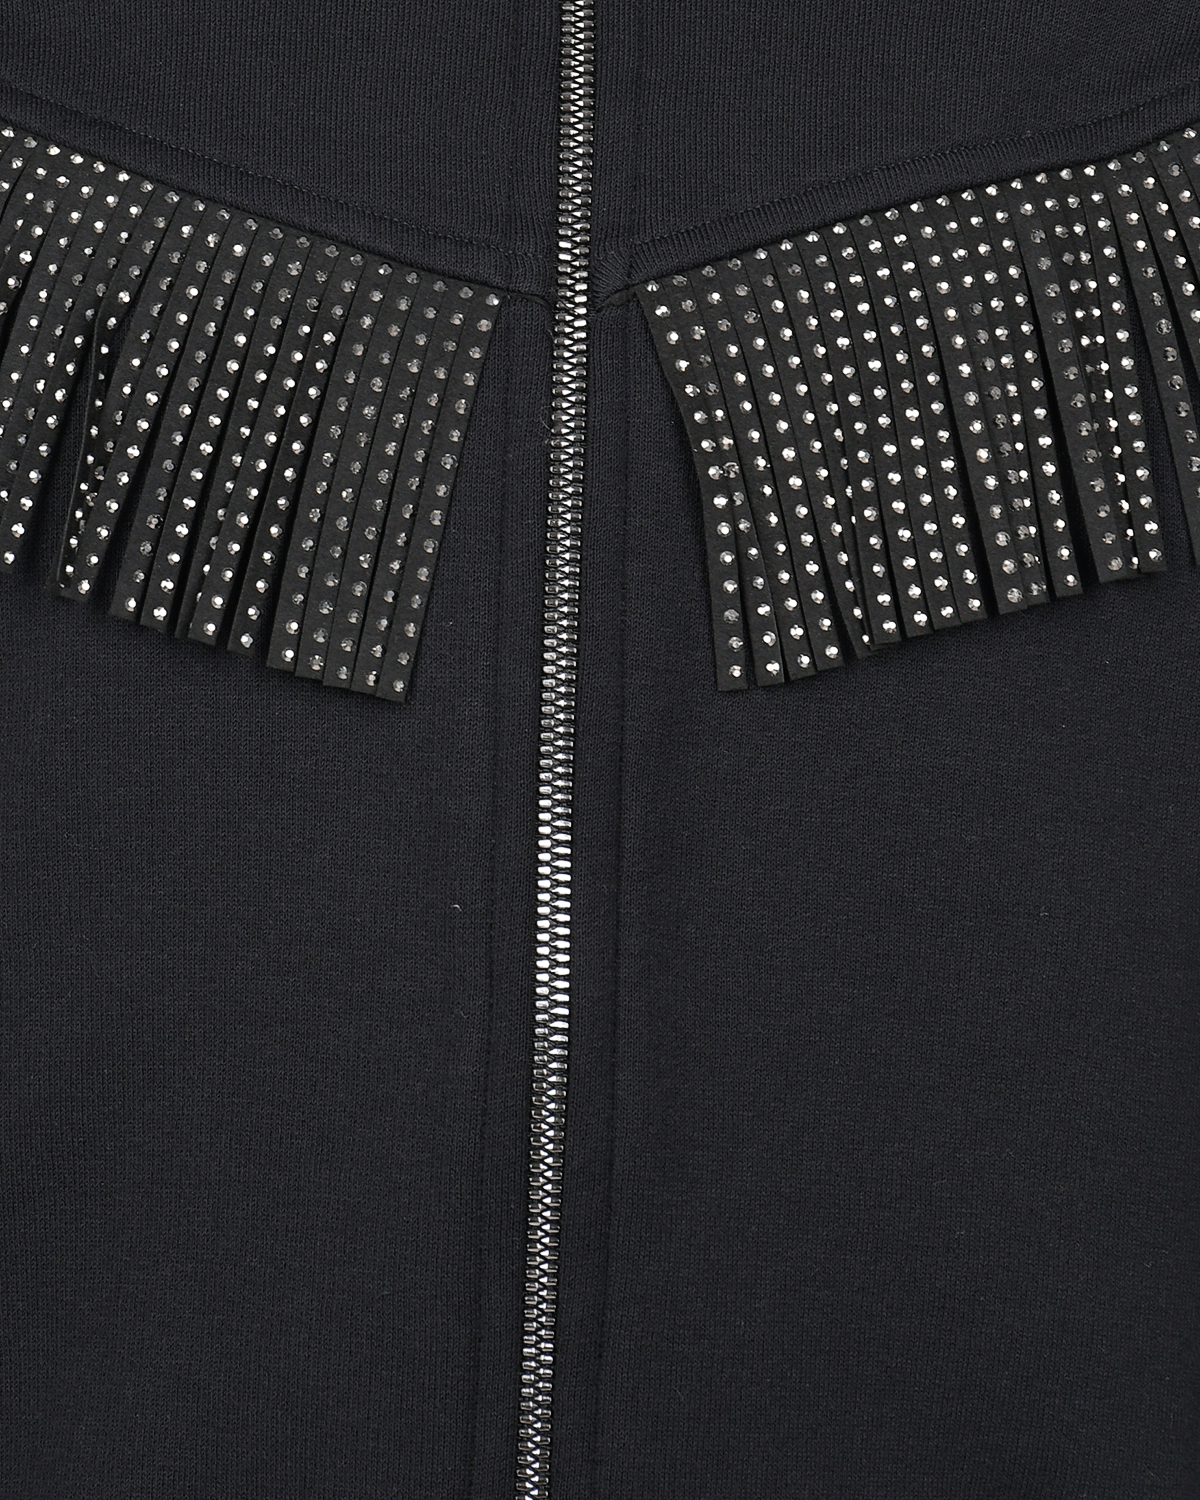 Черная спортивная куртка с бахромой из стразов Monnalisa детская, размер 140, цвет черный - фото 3